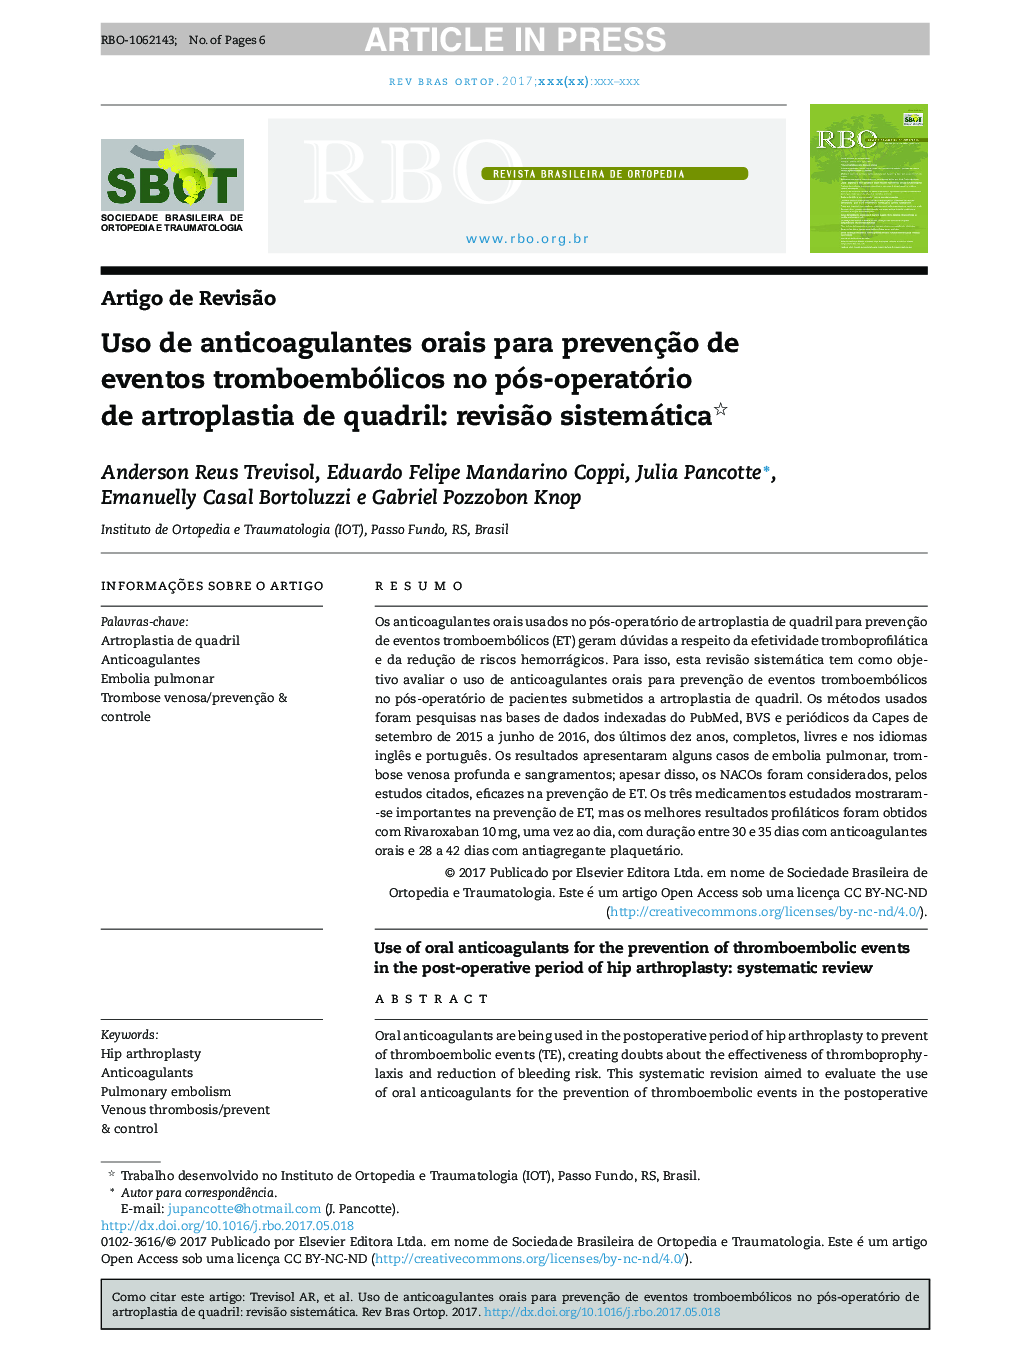 Uso de anticoagulantes orais para prevençÃ£o de eventos tromboembólicos no pósâoperatório de artroplastia de quadril: revisÃ£o sistemática